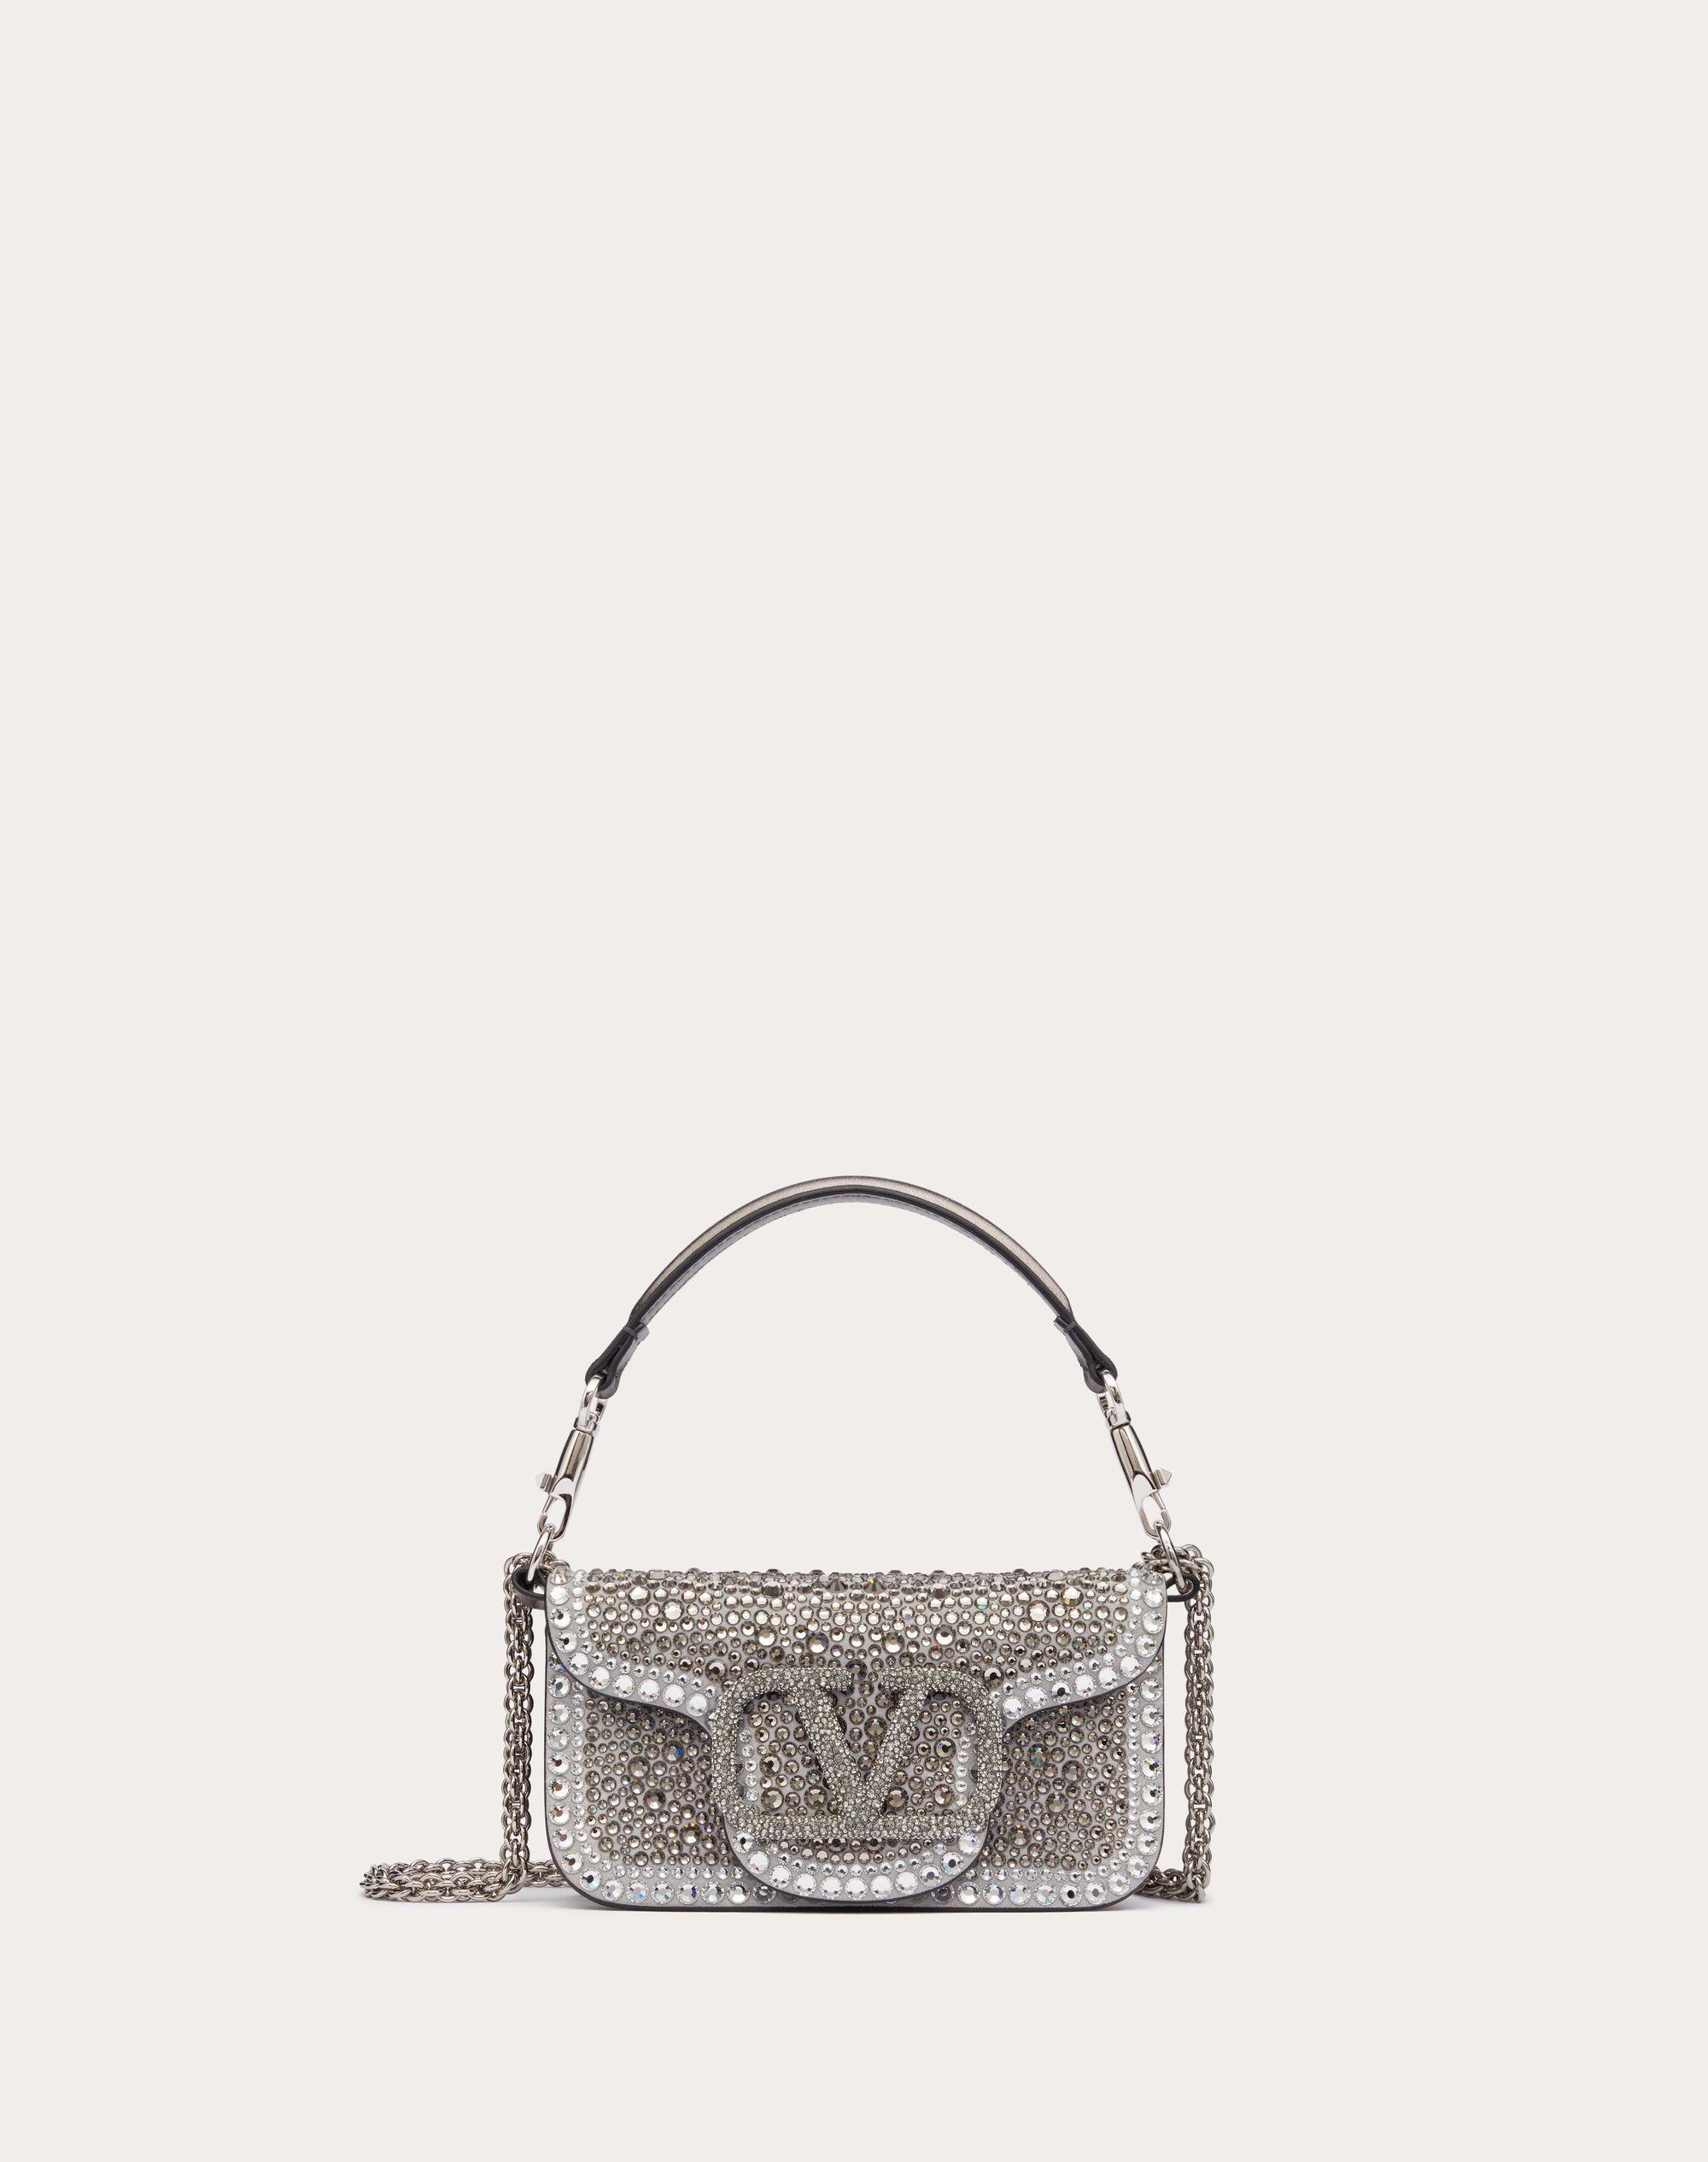 3D model Valentino Garavani Loco Embroidered Crystal Shoulder Bag